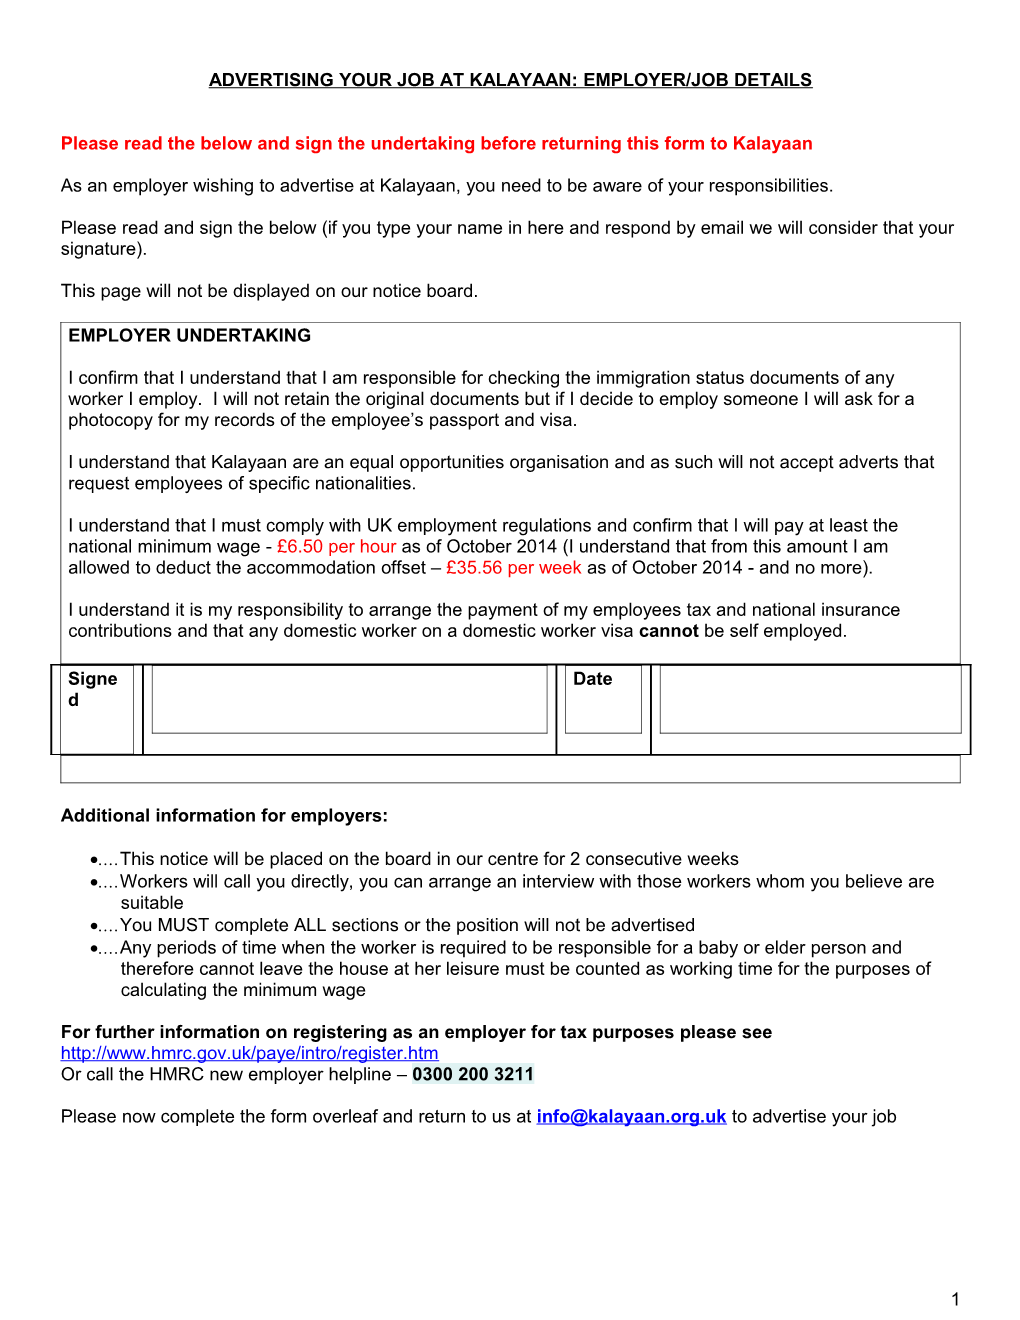 Advertising Your Job at Kalayaan: Employer/Job Details